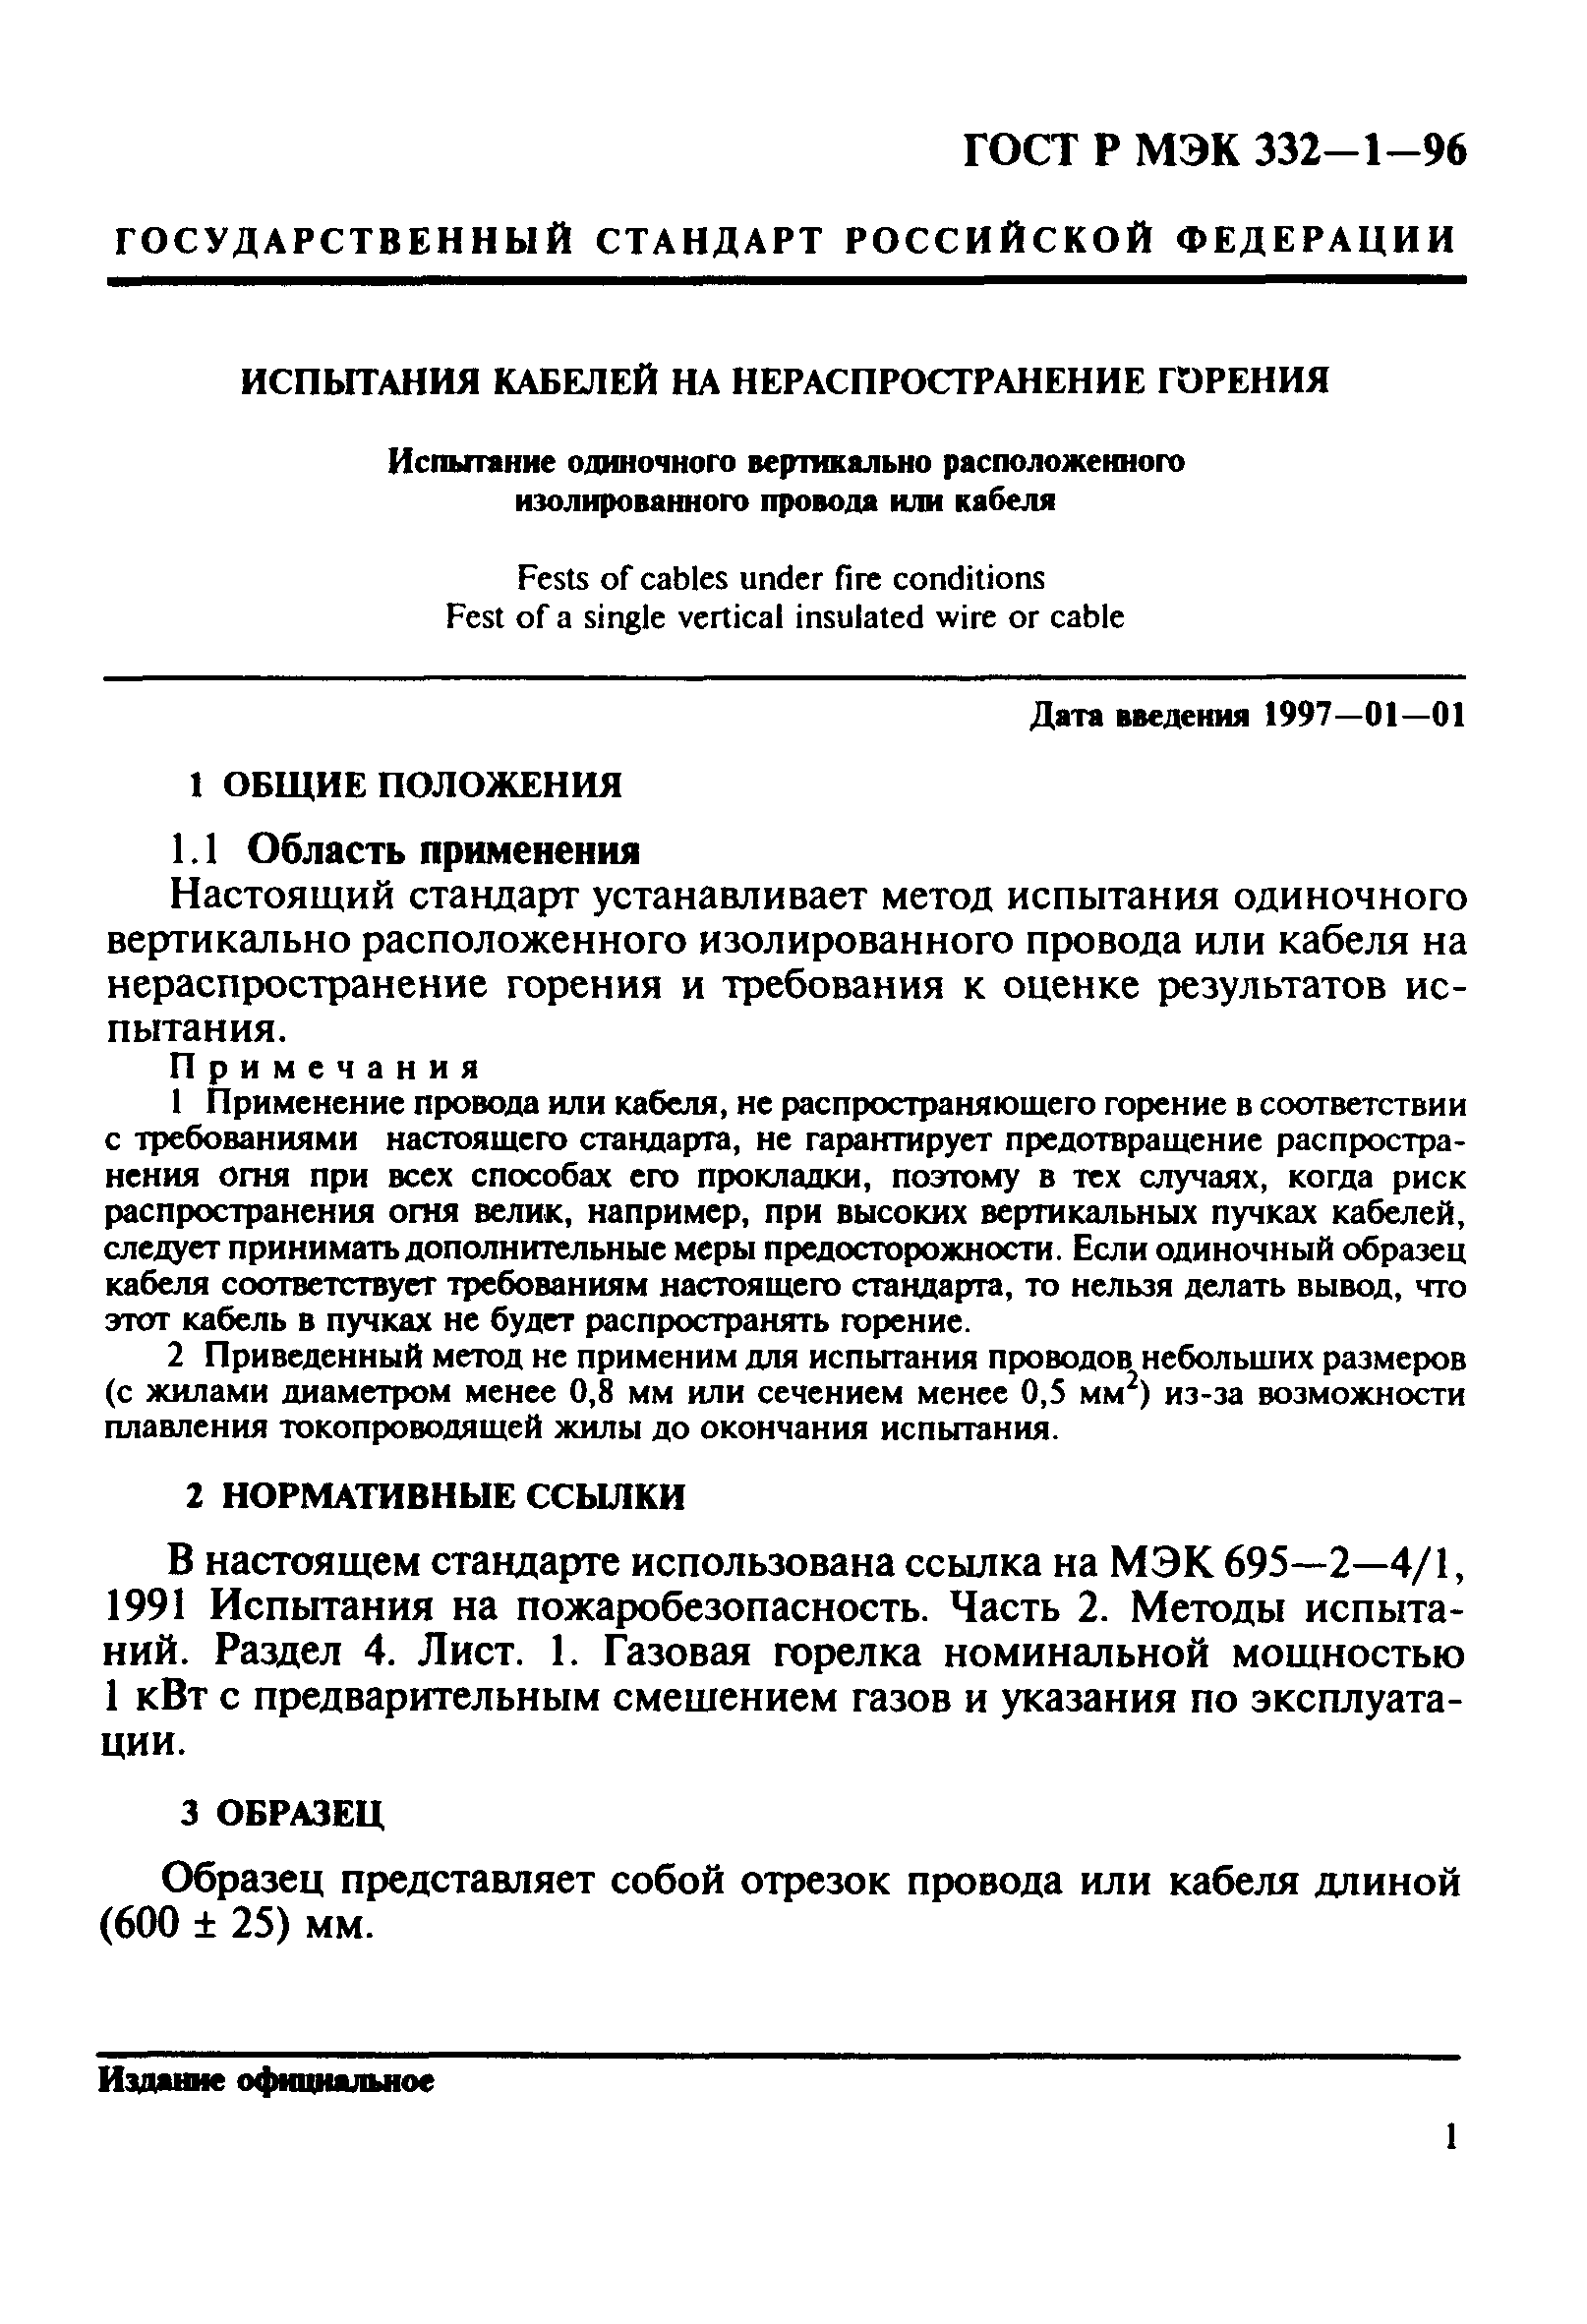 ГОСТ Р МЭК 332-1-96